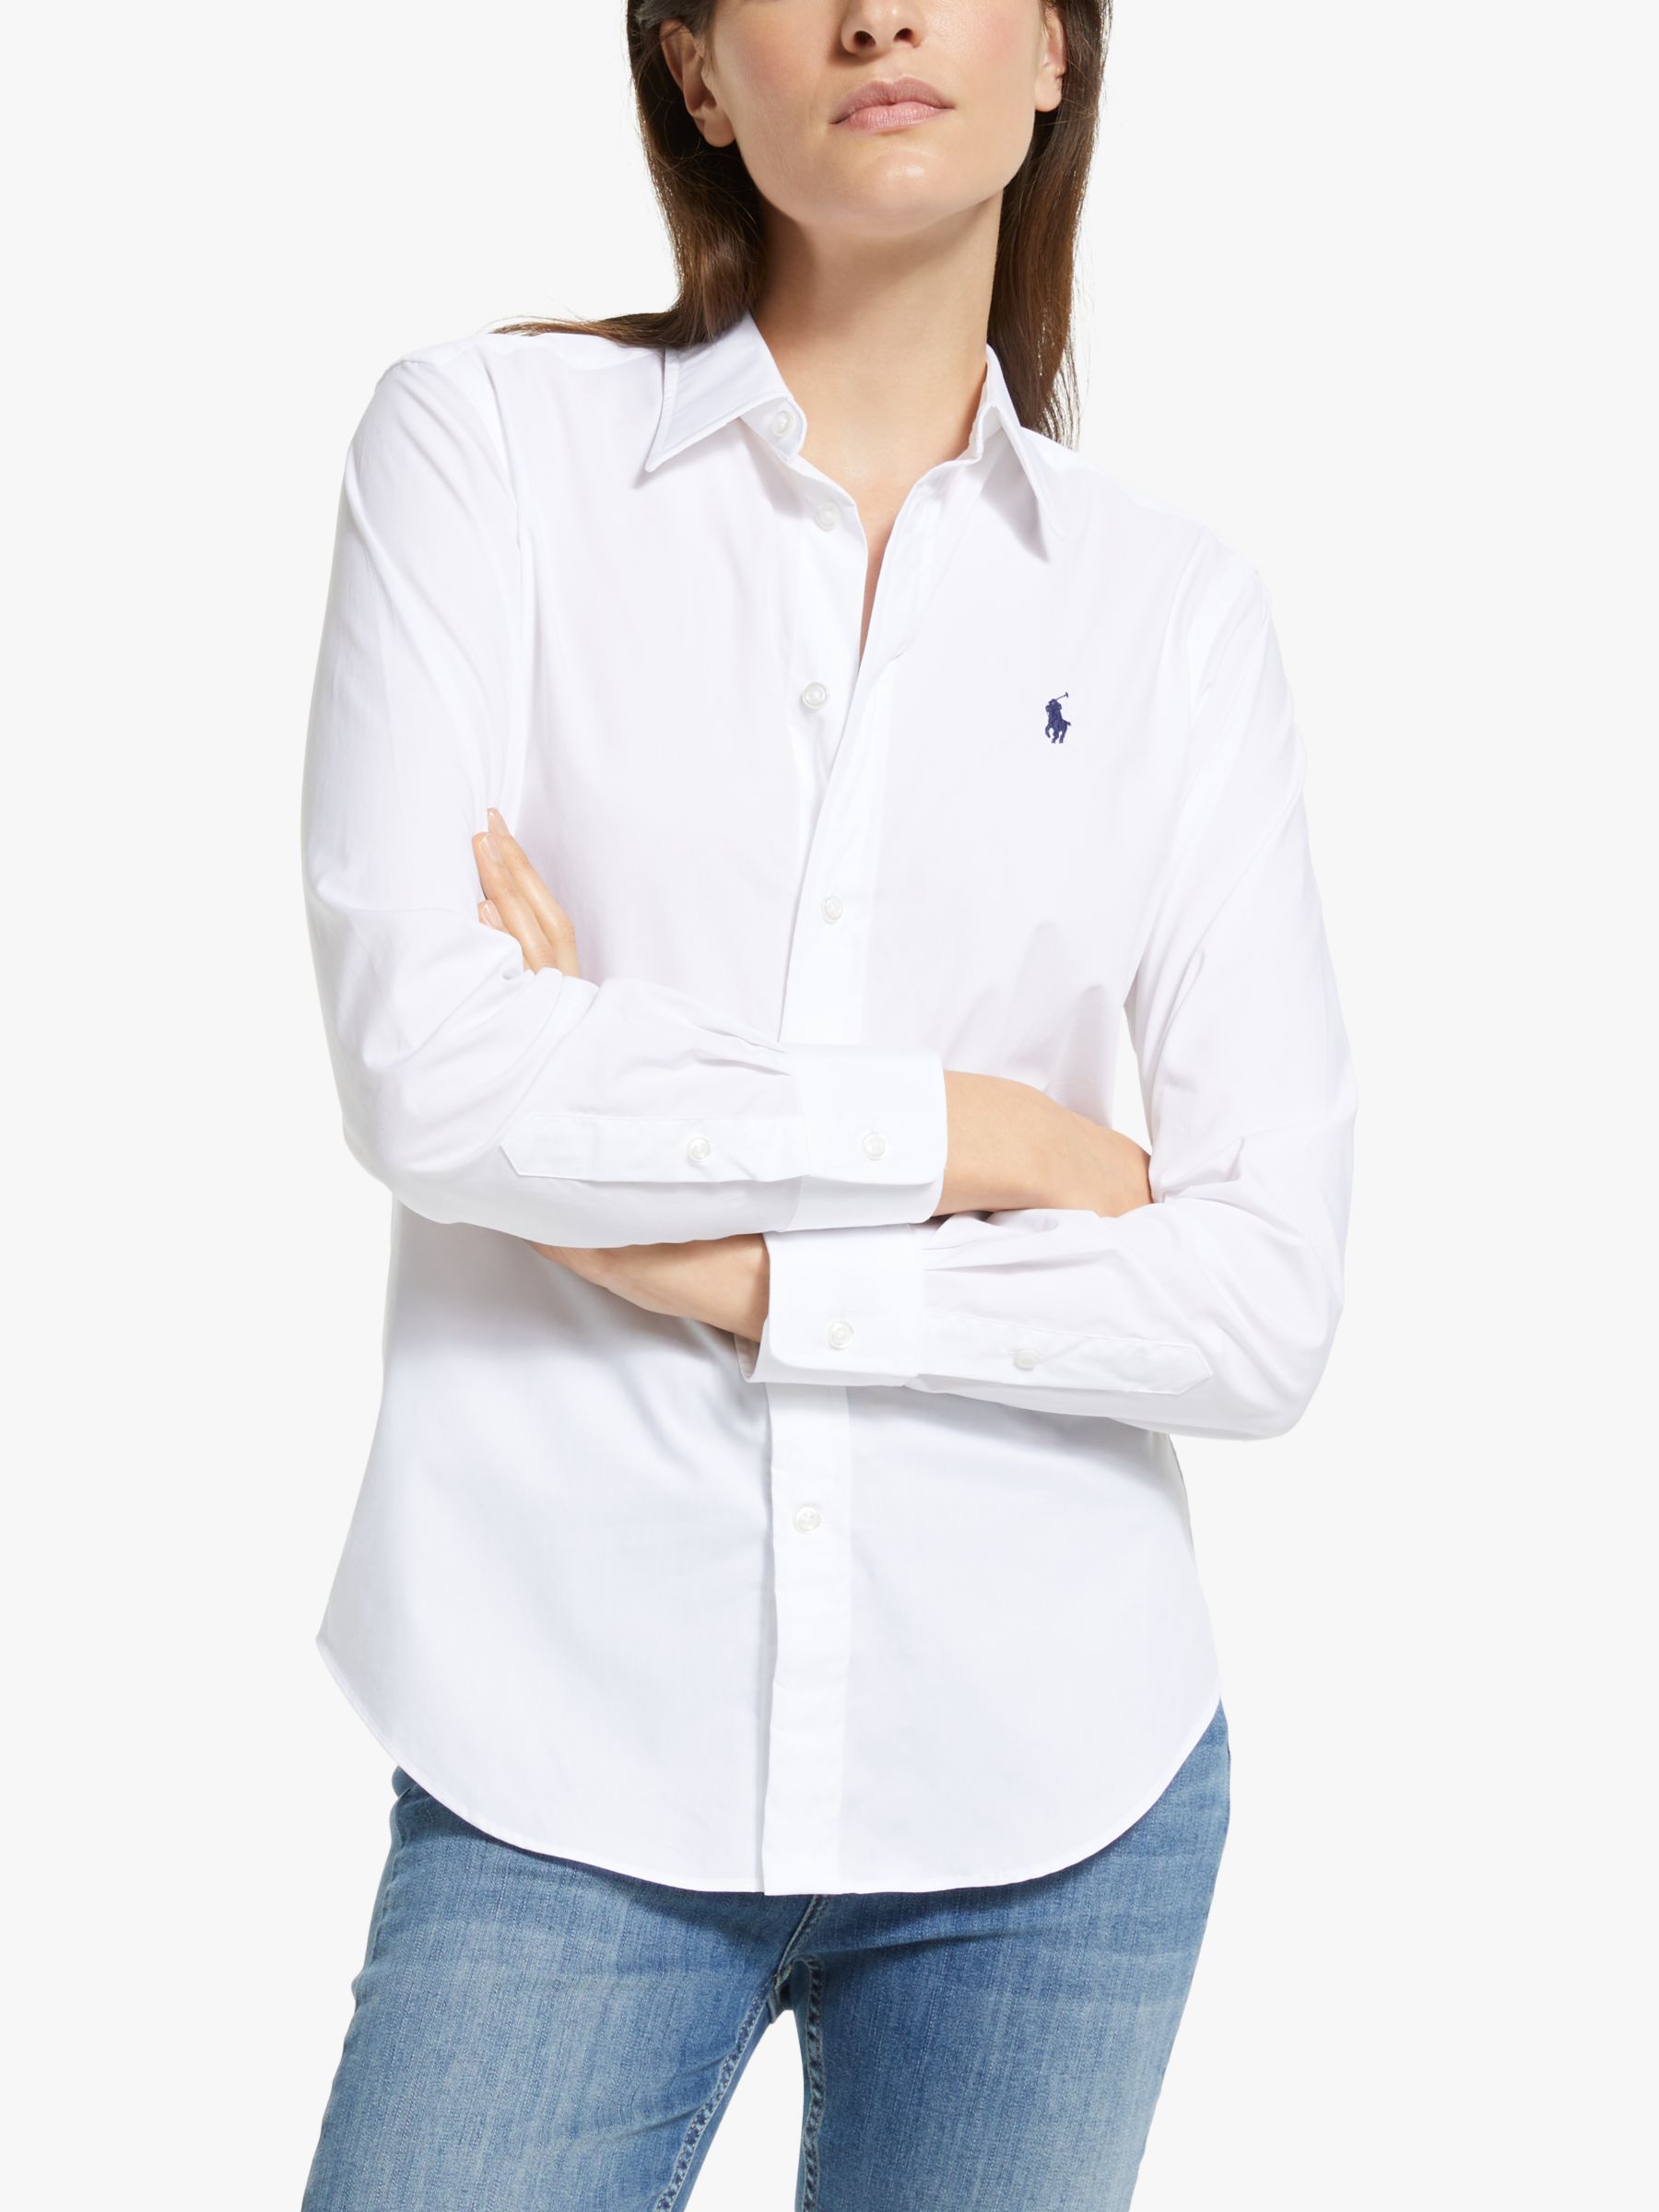 Polo Ralph Lauren Georgia Shirt, White, 18